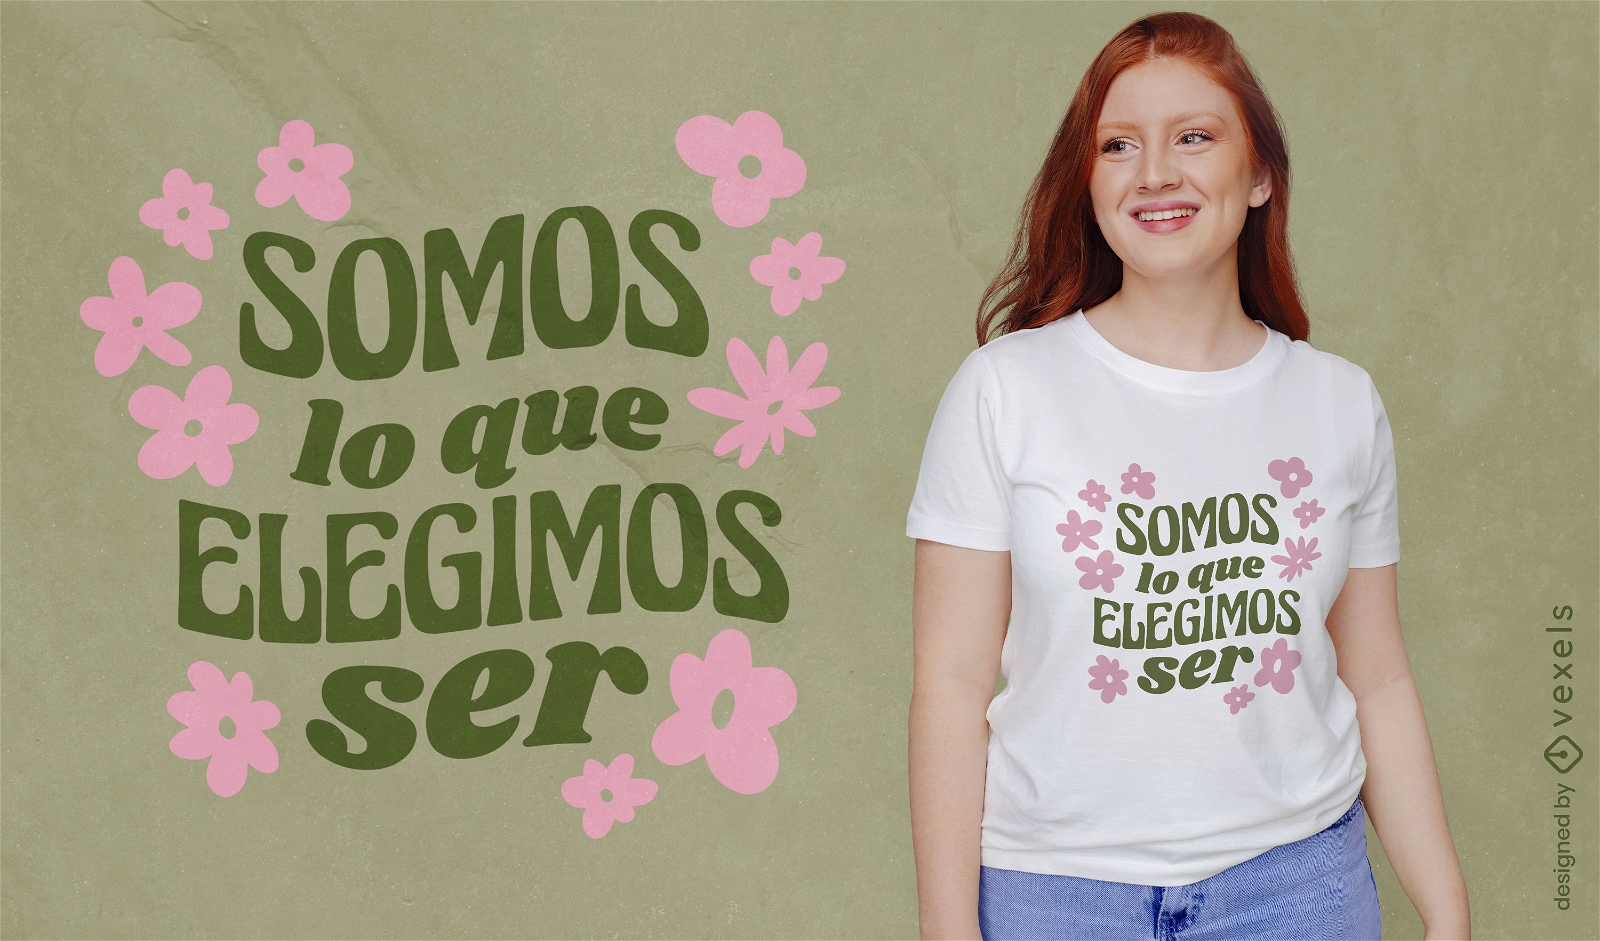 Dise?o de camiseta con letras motivacionales florales en espa?ol.